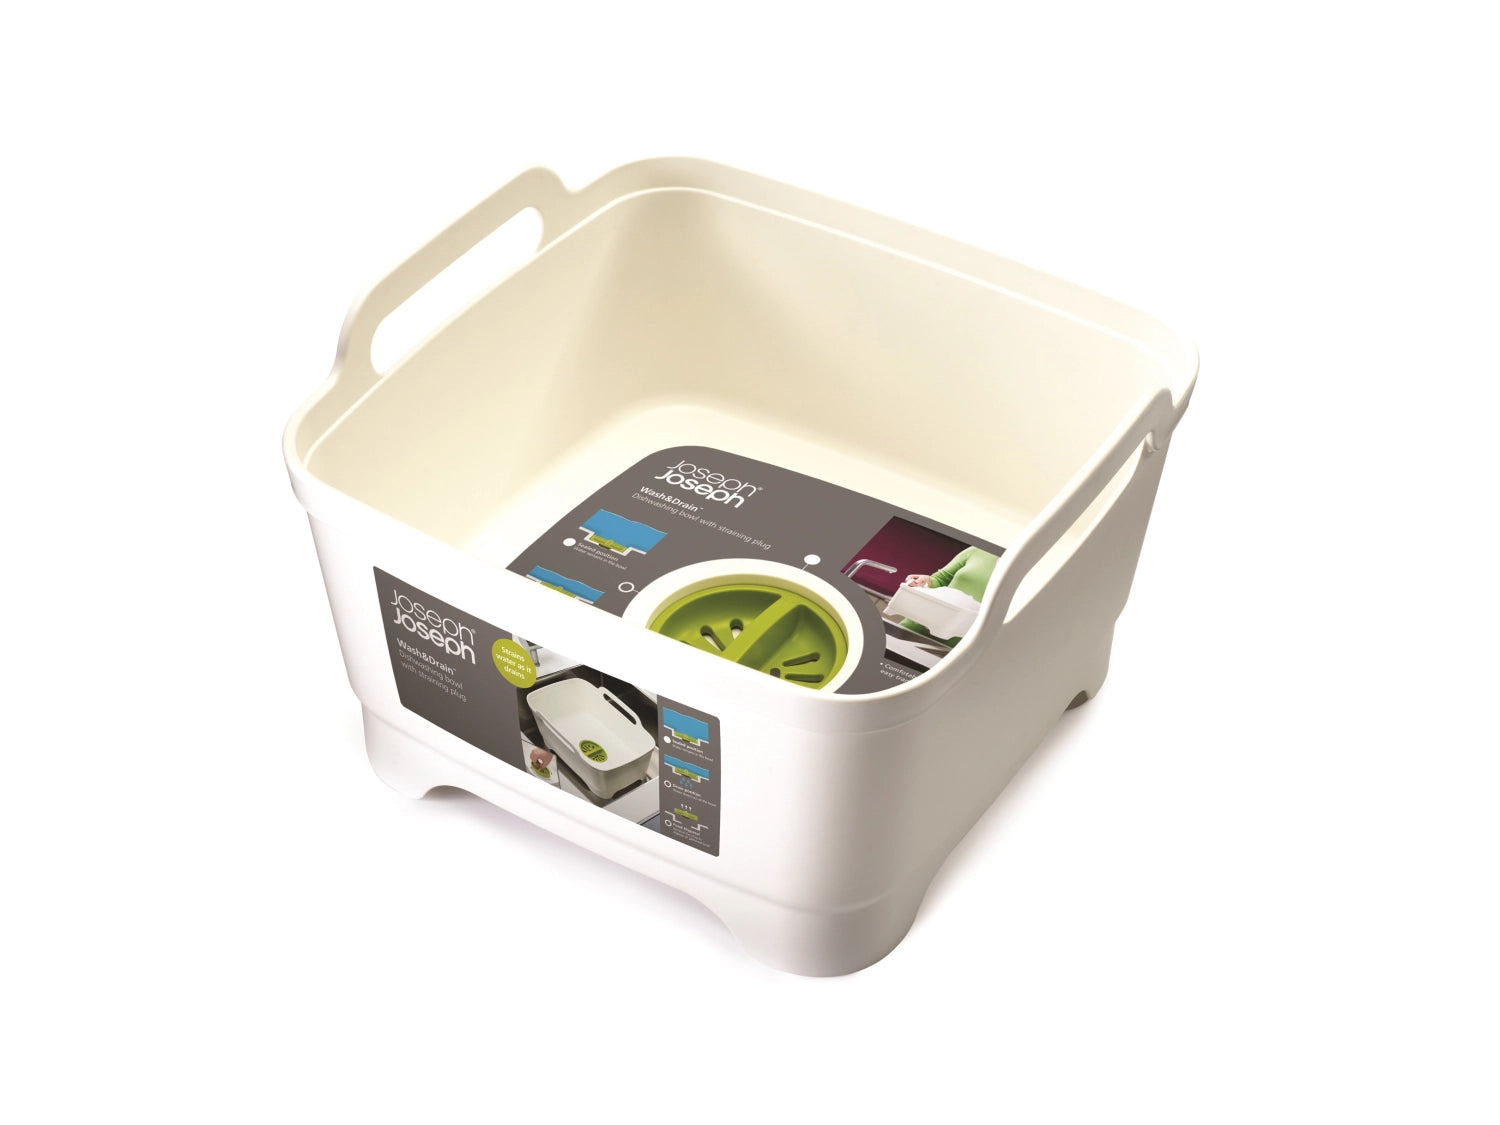 Wash Drain Waschbehälter weiss grün - KAQTU Design